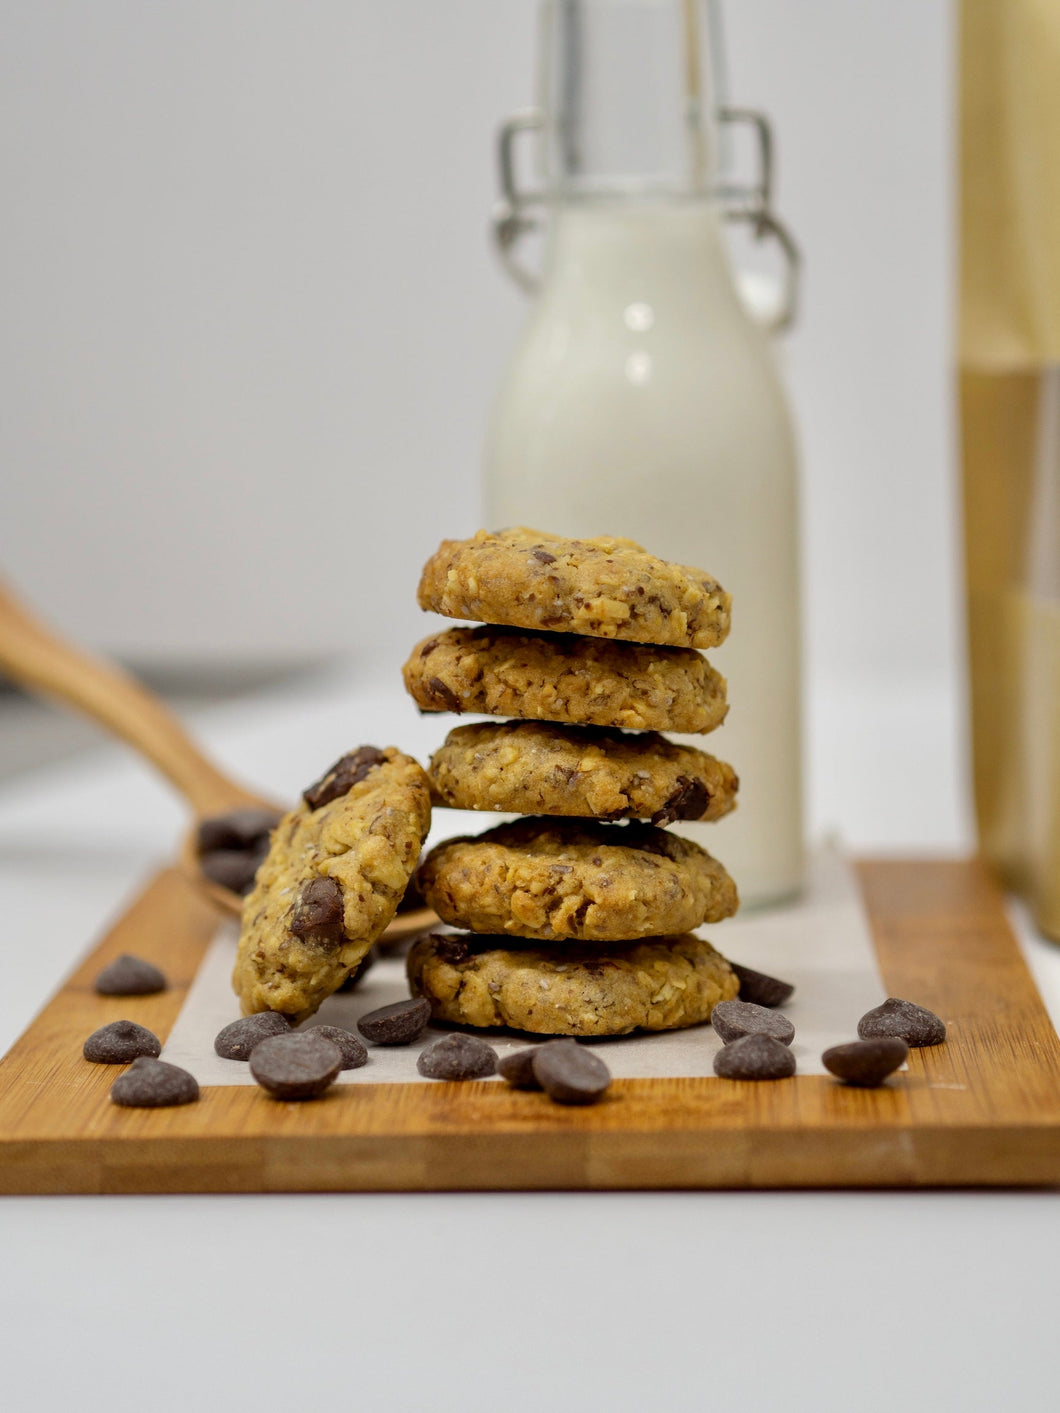 Lactation Bake Bundles (Cookies + Cookies)